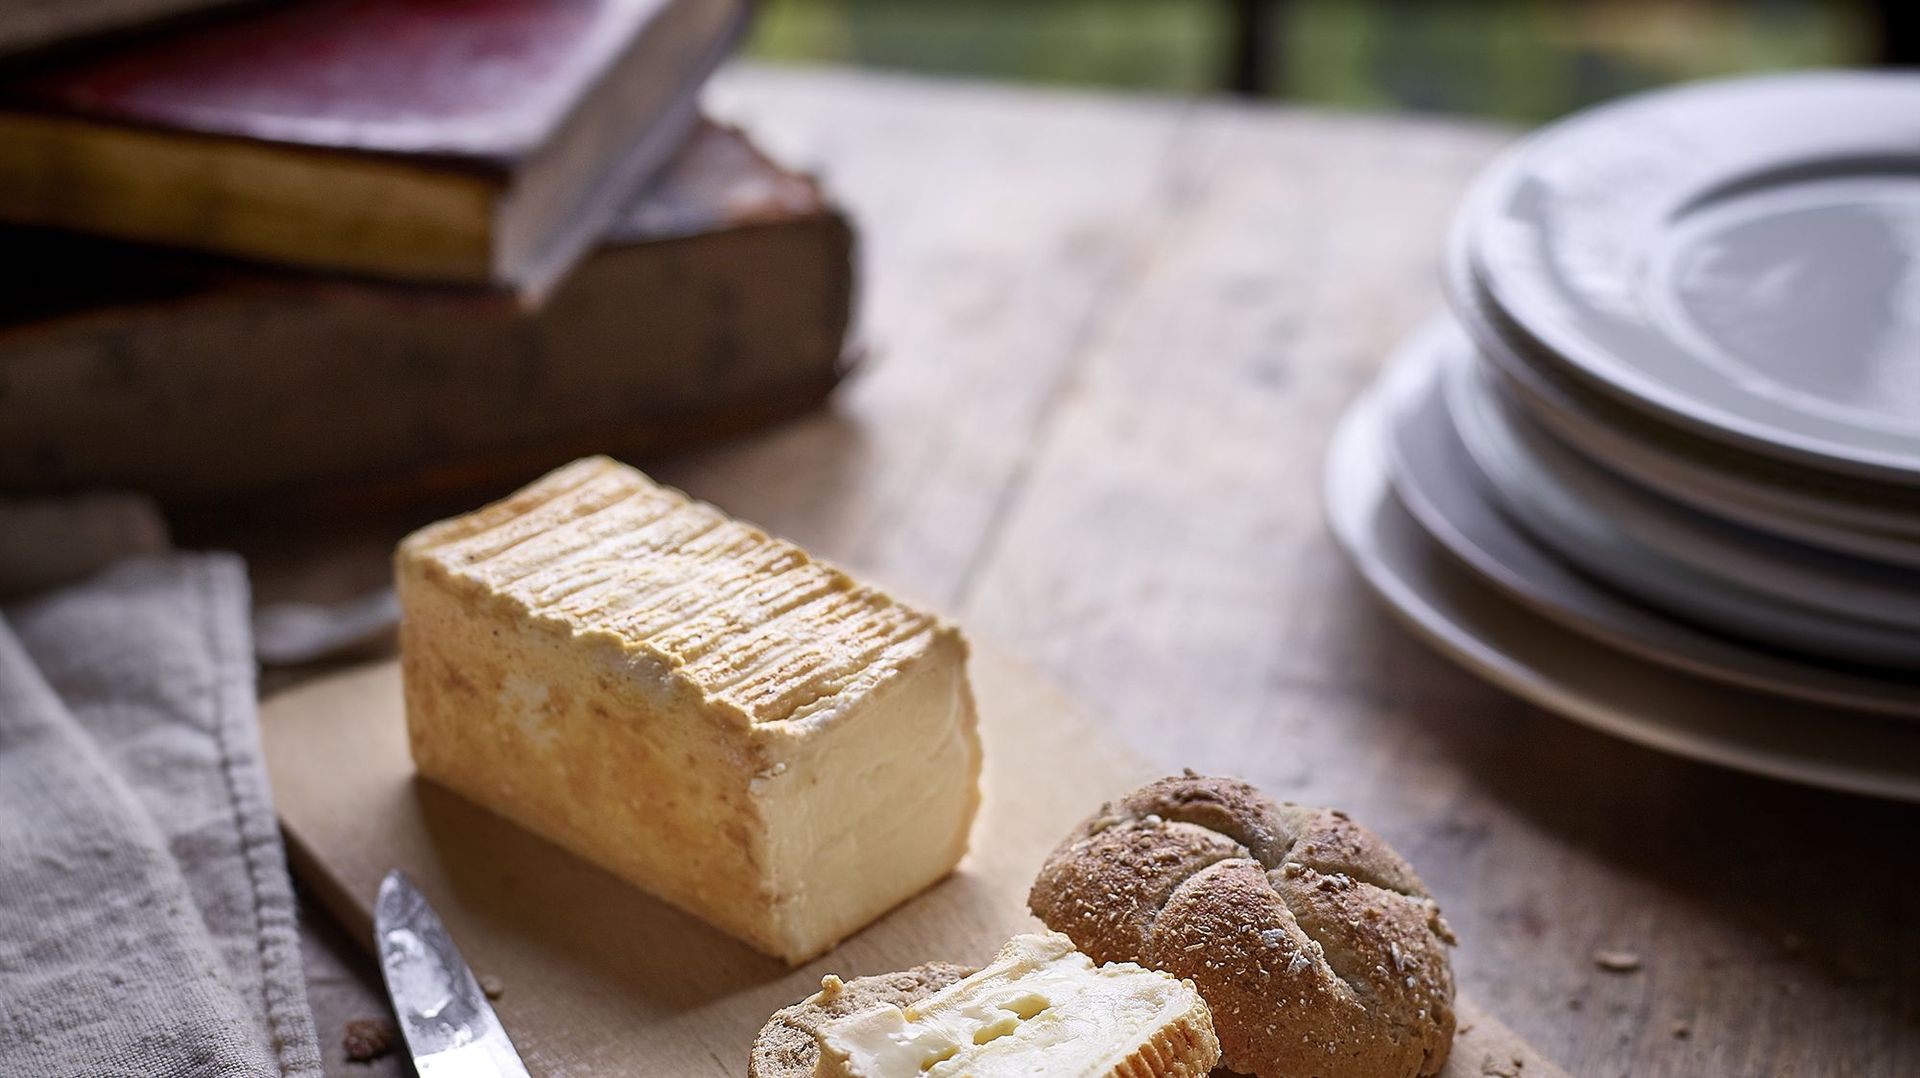 Le fromage de Herve aux senteurs d’épices que l’on peut déguster au "Casse-Croûte" de l’abbaye du Val-Dieu